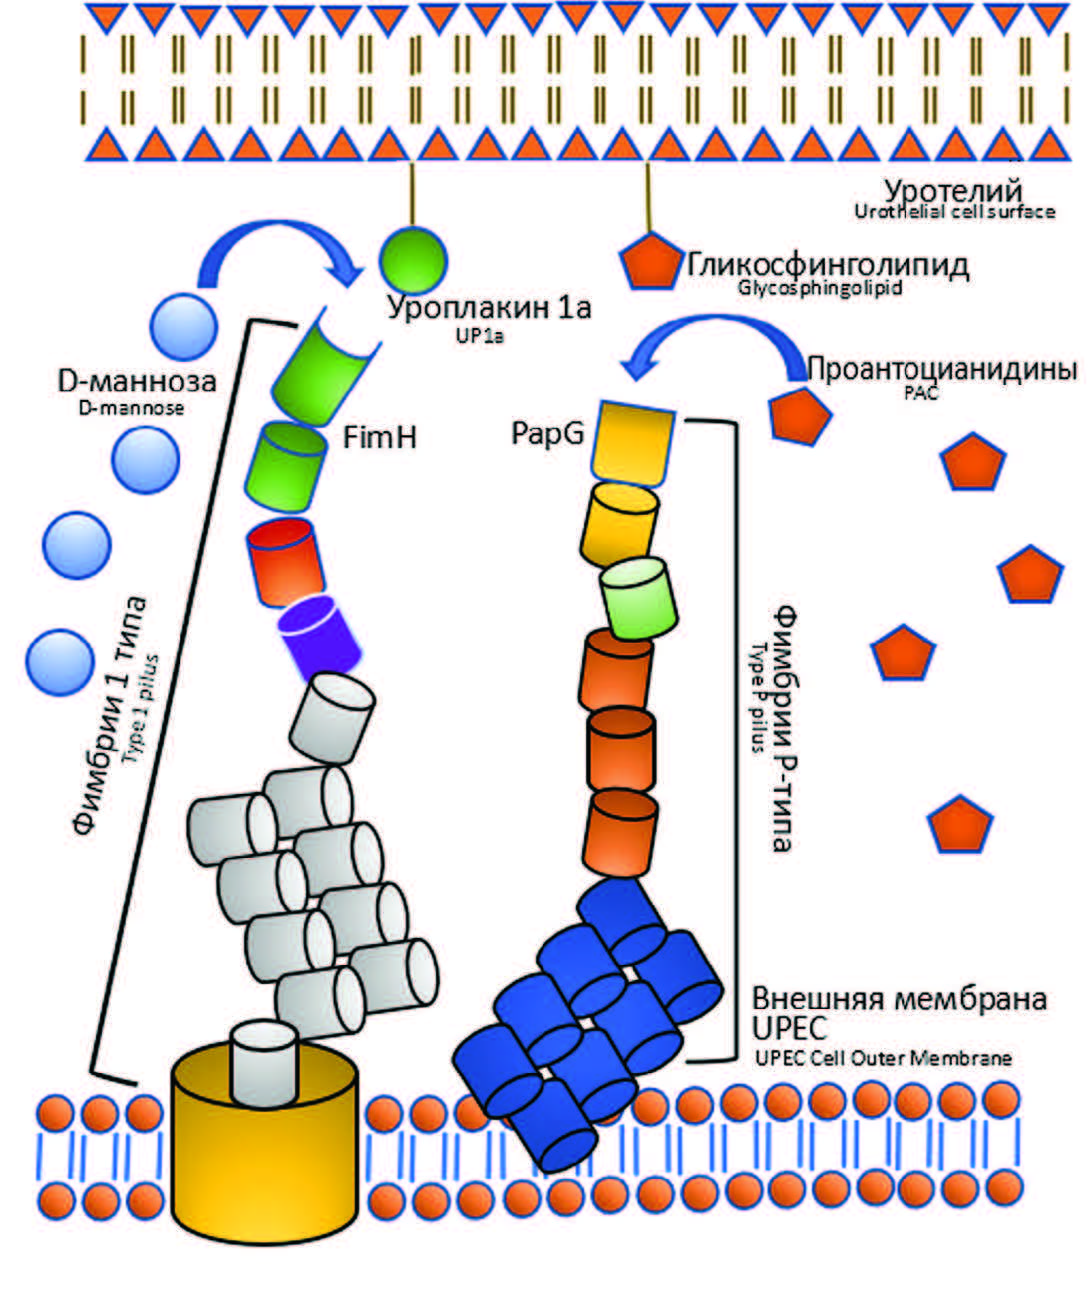 Механизм действия D-маннозы и проантоцианидино